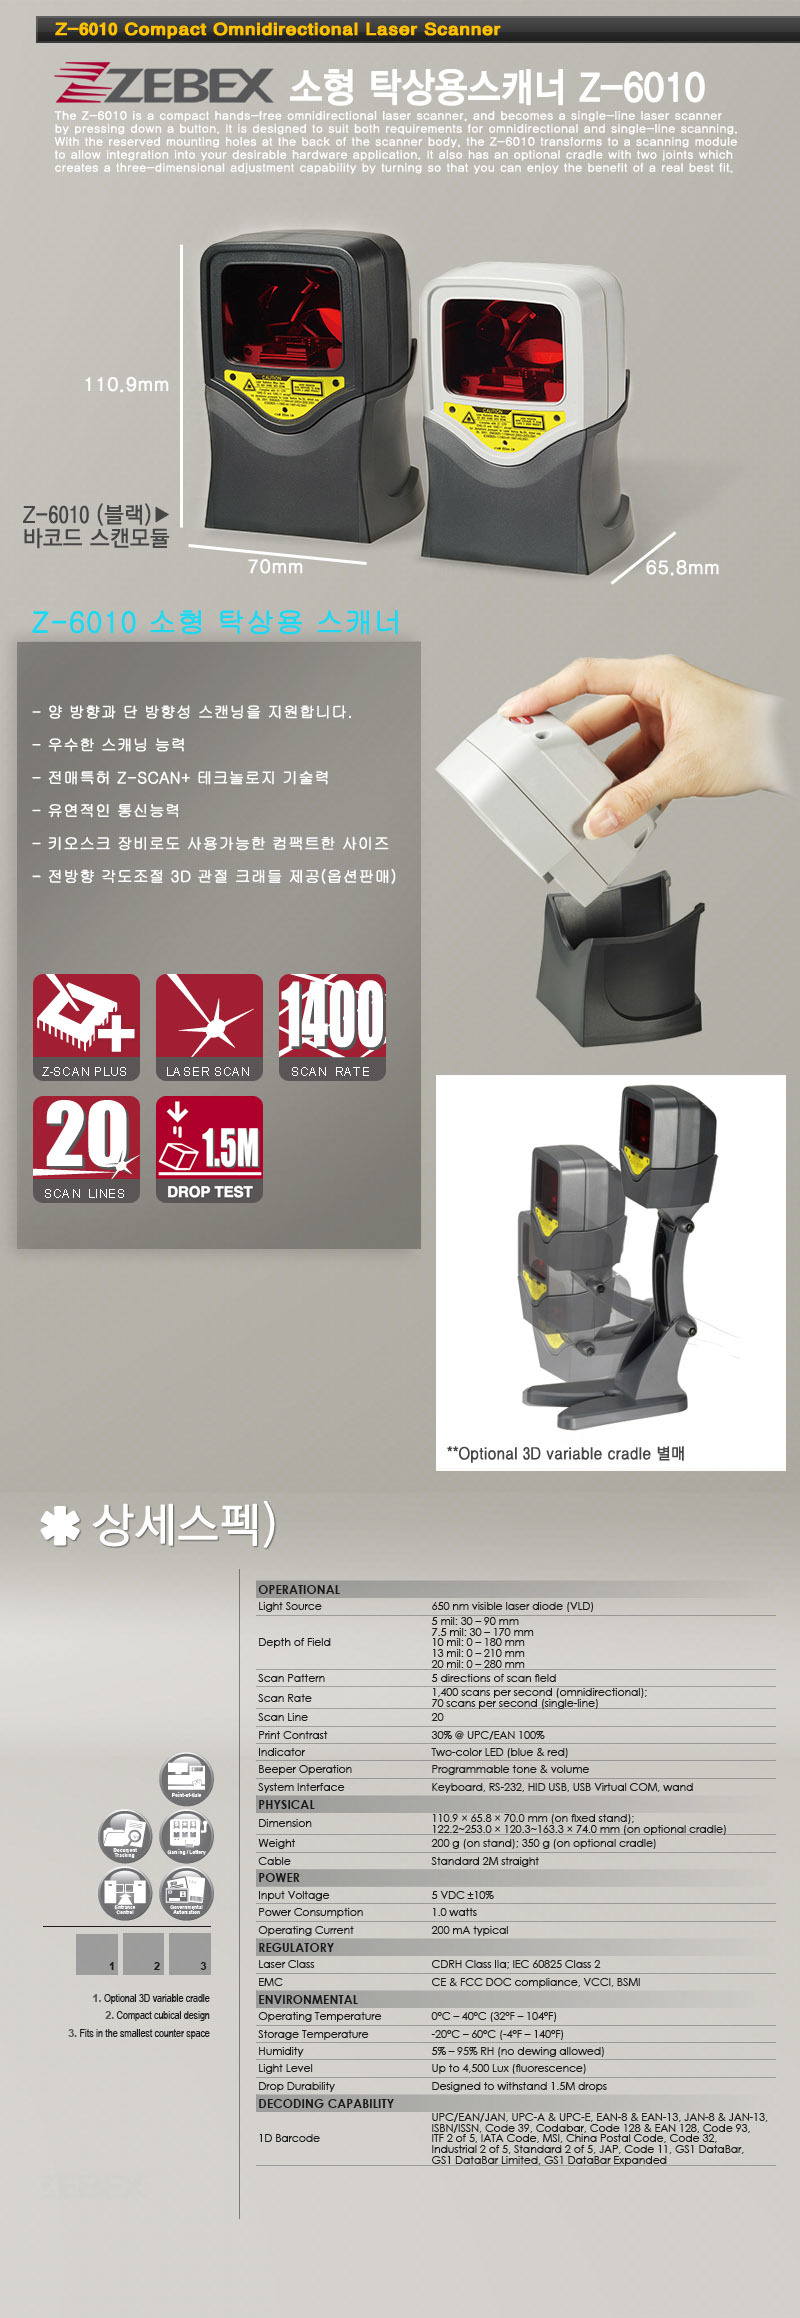 z-6010 소형 탁상용 스캐너 양방향과 단 방향성 스캐닝을 지원 우수한 스캐닝 능력 전매특허 z-scan + 테크놀로지 기술력 유연적인 통신능력